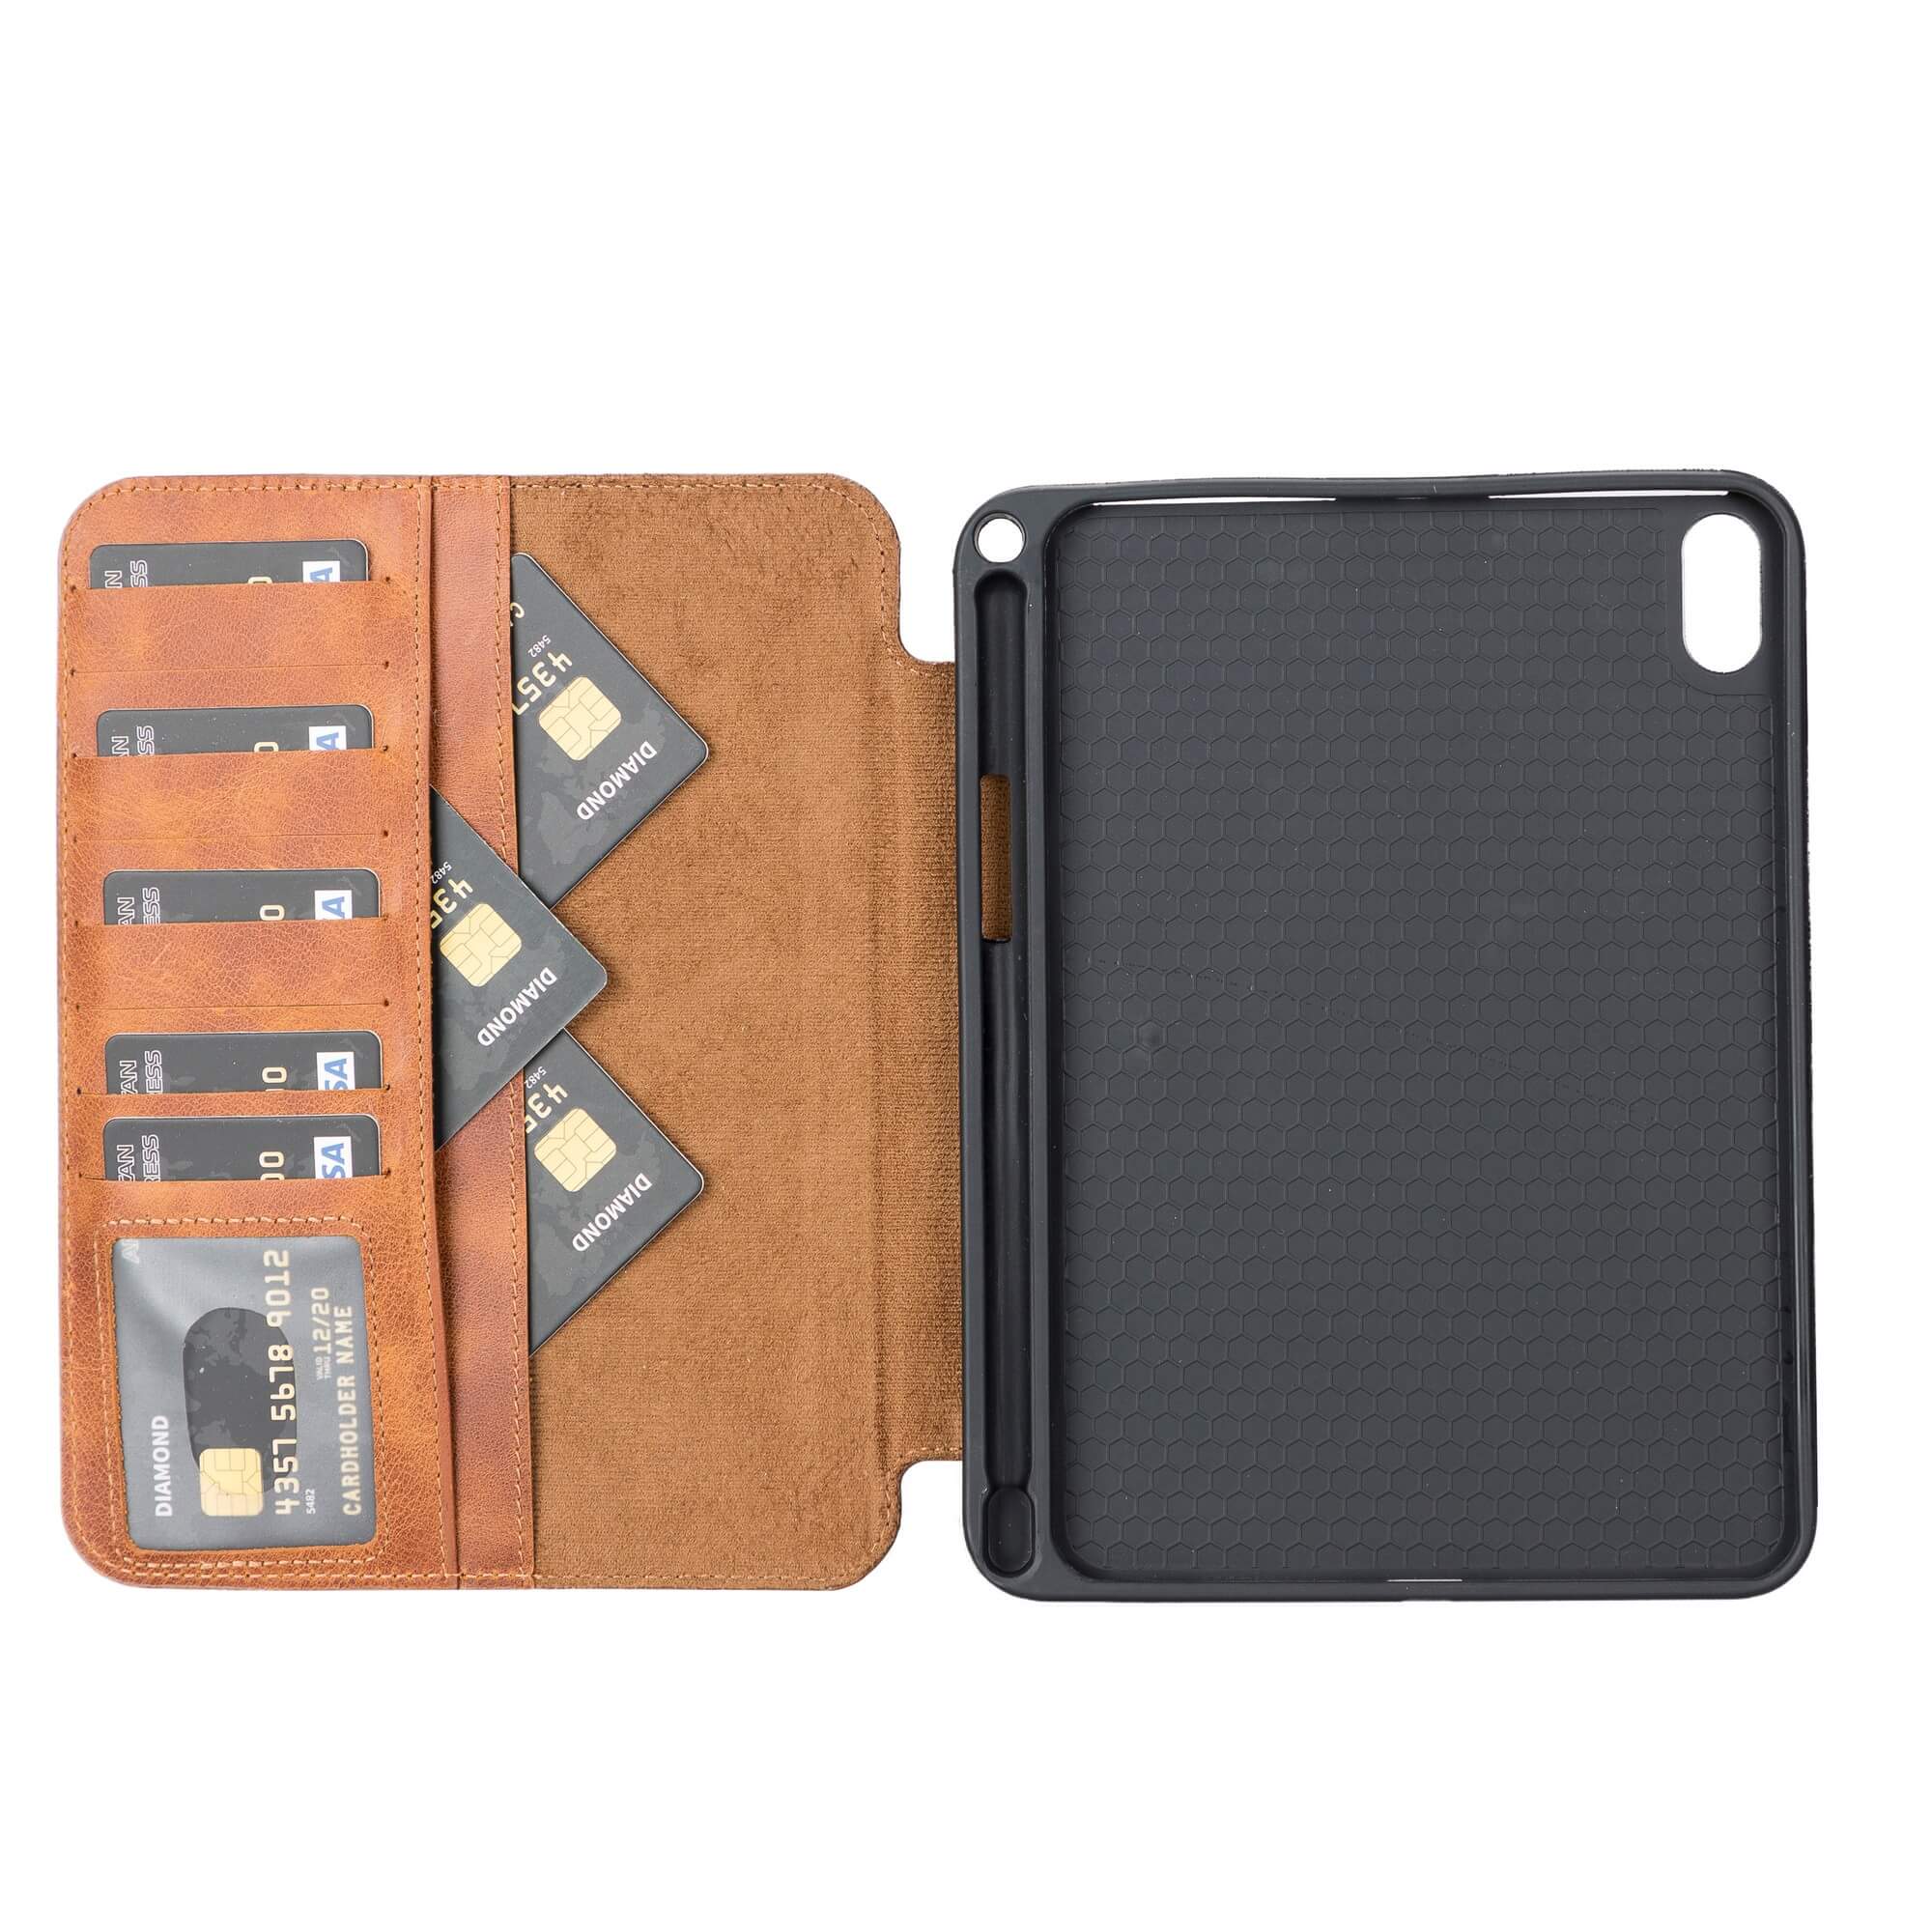 Leather case for iPad mini